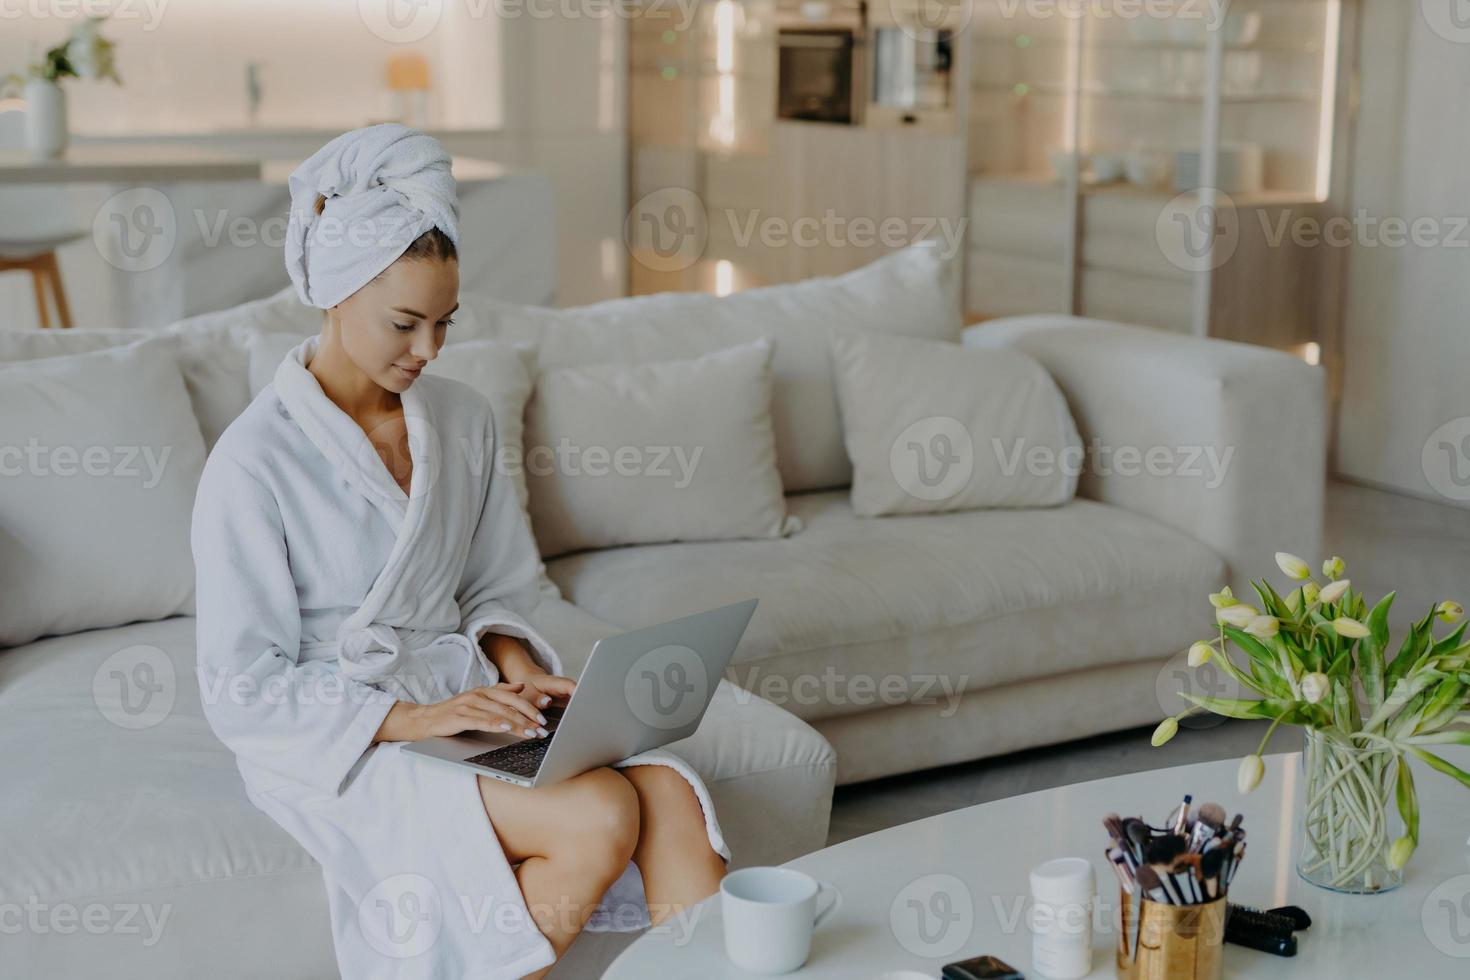 foto av vacker ung kvinna i morgonrock typer på bärbar dator fungerar på avstånd från hemmet poserar på bekväm soffa mot modern lägenhet interiör dricker te. människors välbefinnande livsstil